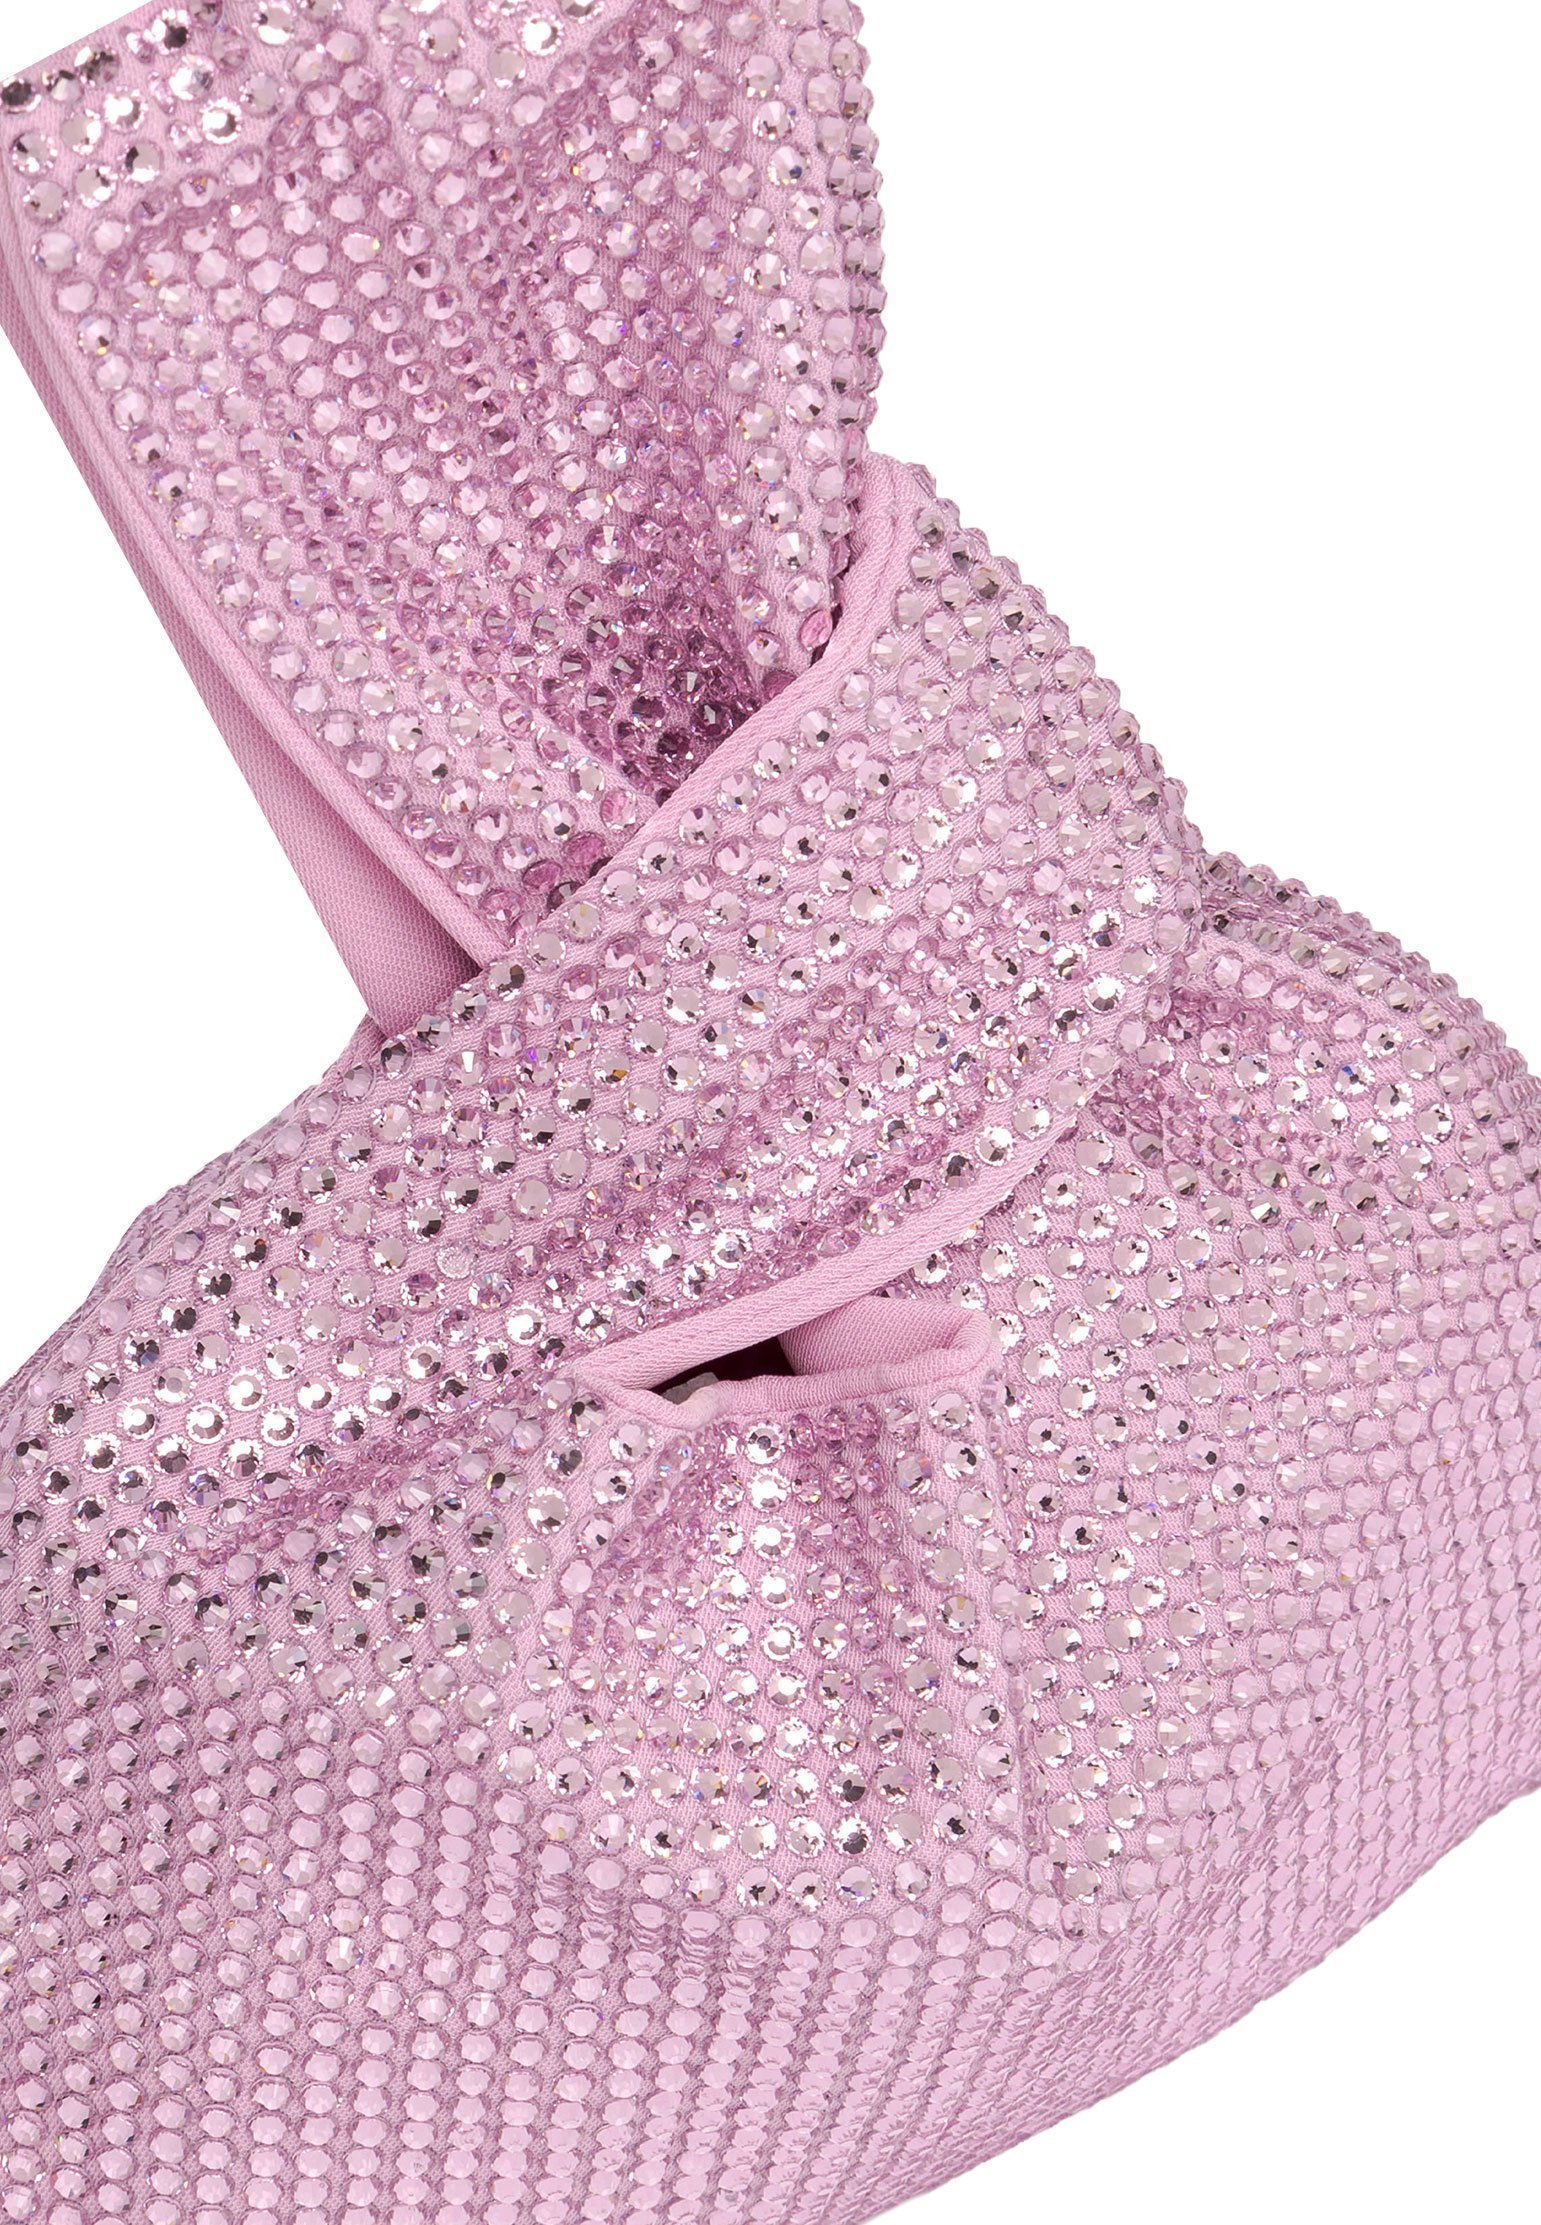 Bag GIUSEPPE DI MORABITO Color: lilas (Code: 1909) in online store Allure